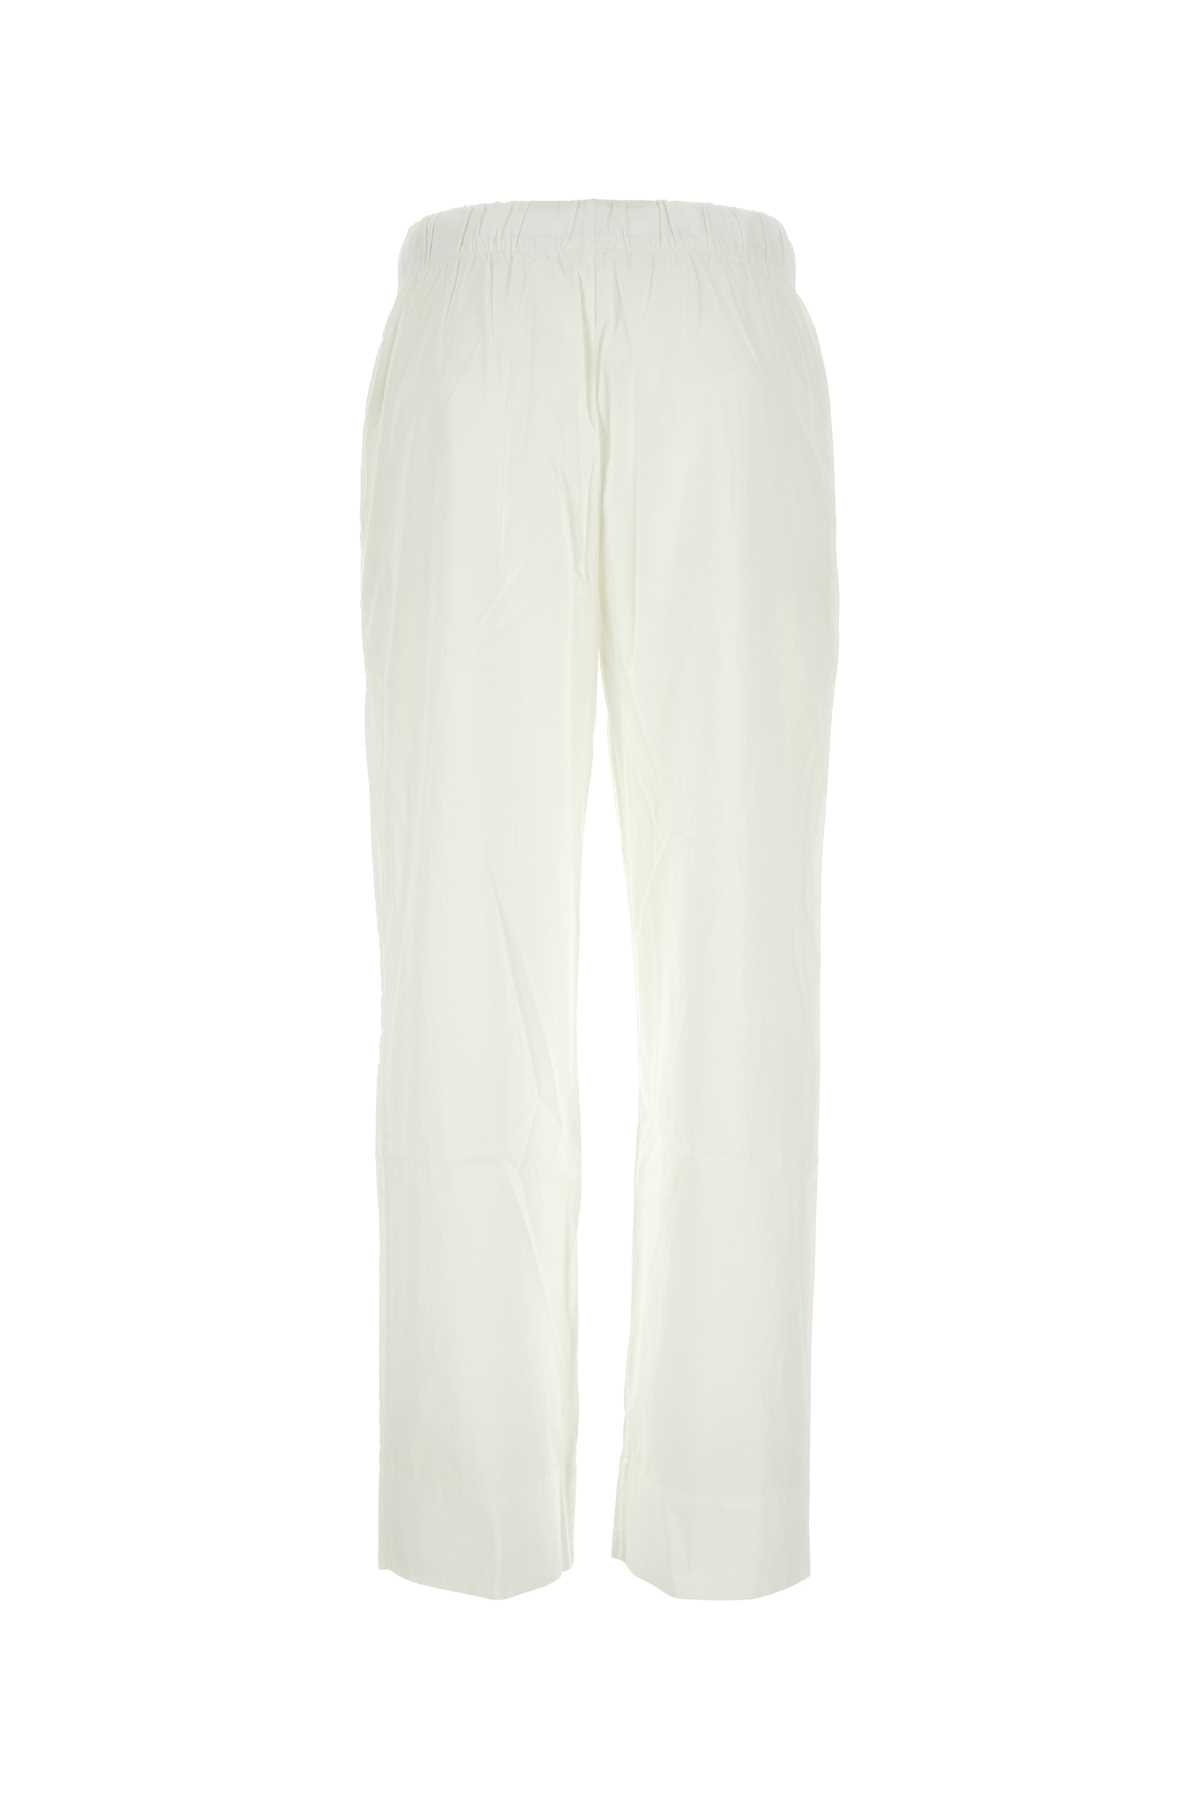 Tekla White Cotton Pyjama Pant In Alabasterwhite